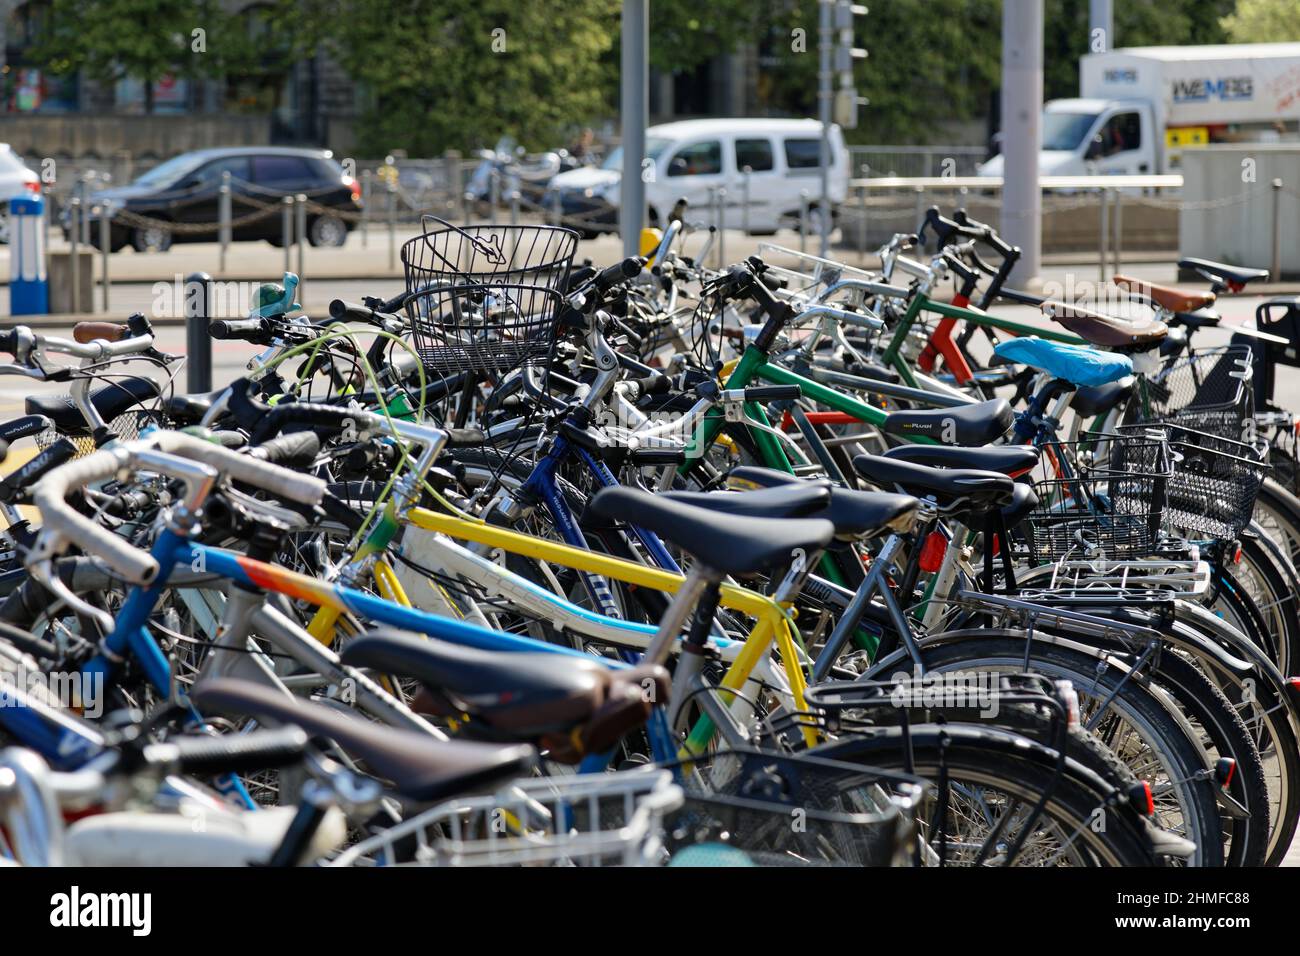 04.25.2019 Zurich, suiza: Estación principal, muchas bicicletas, falta de aparcamiento para bicicletas en toda la ciudad, la demanda es mucho más grande que la oferta, daytim Foto de stock